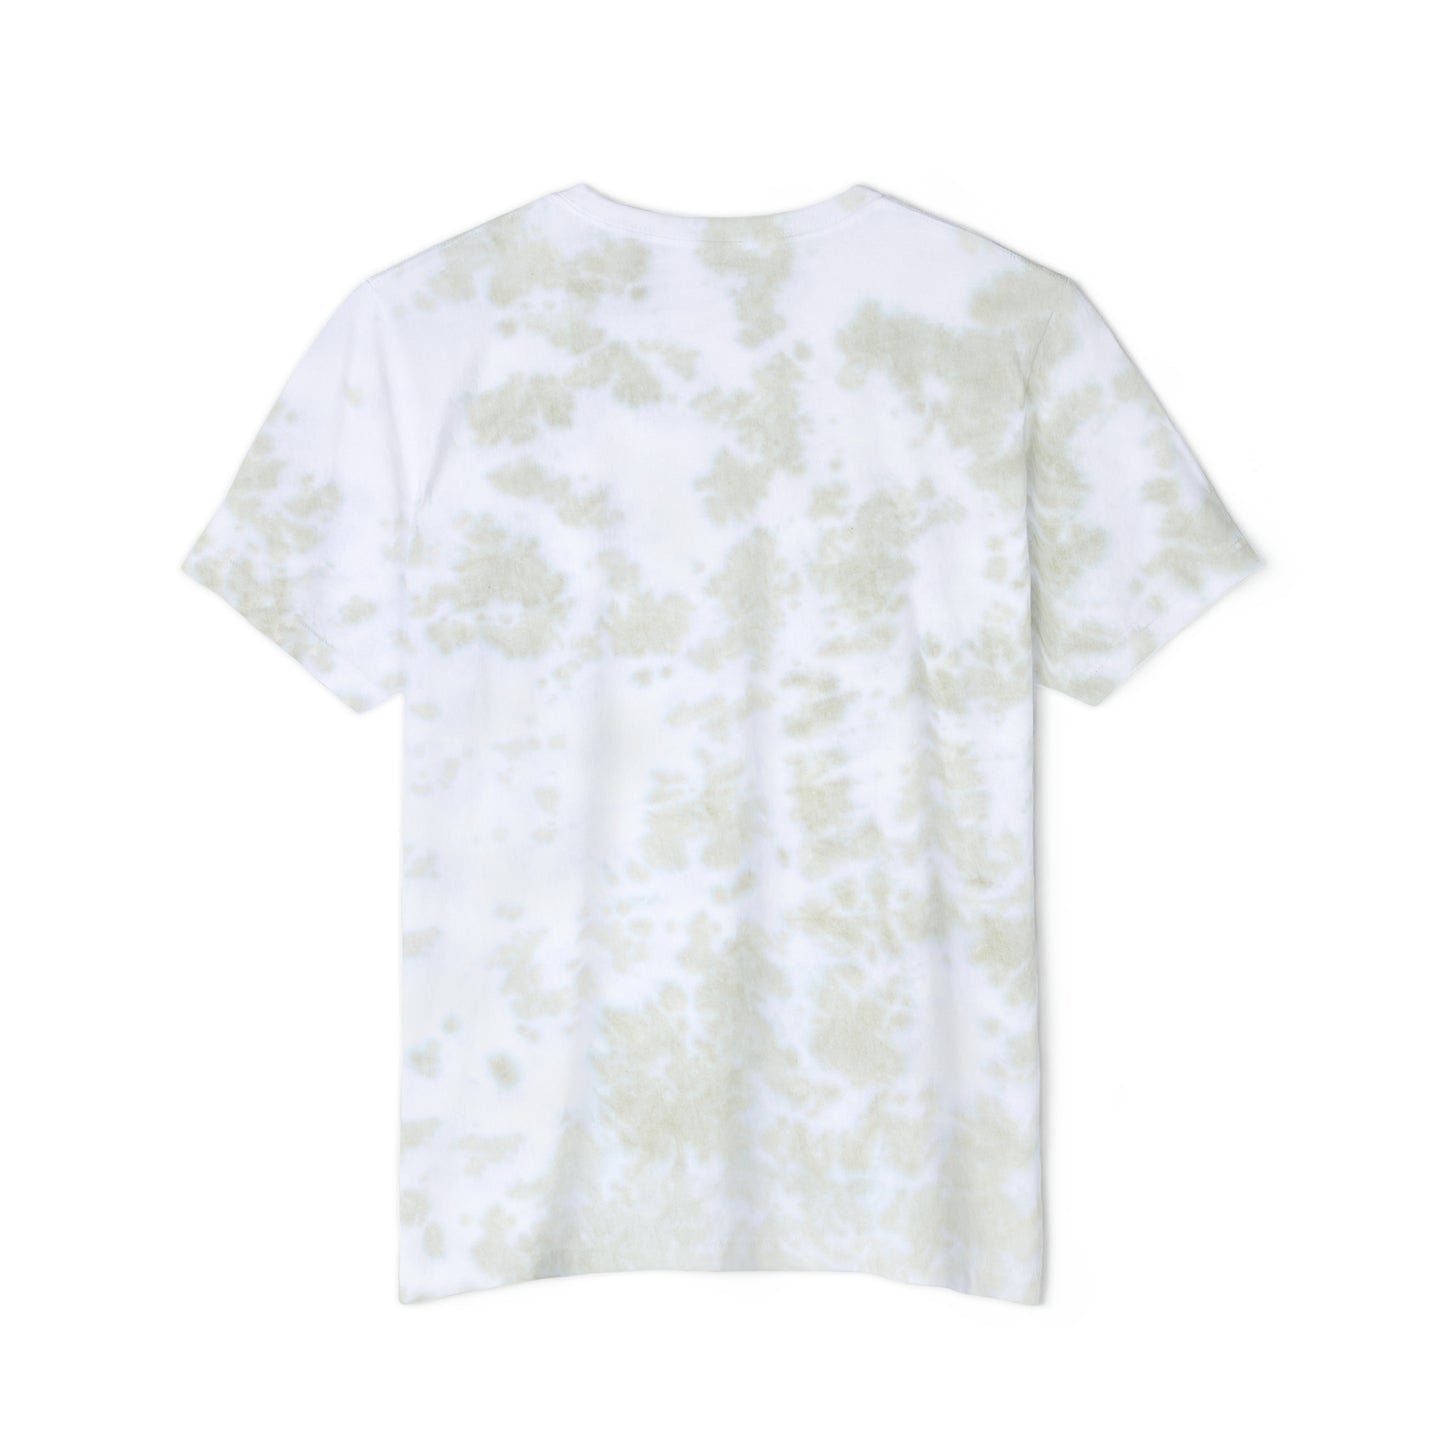 Recbar in a Halfshell Unisex FWD Fashion Tie-Dyed T-Shirt